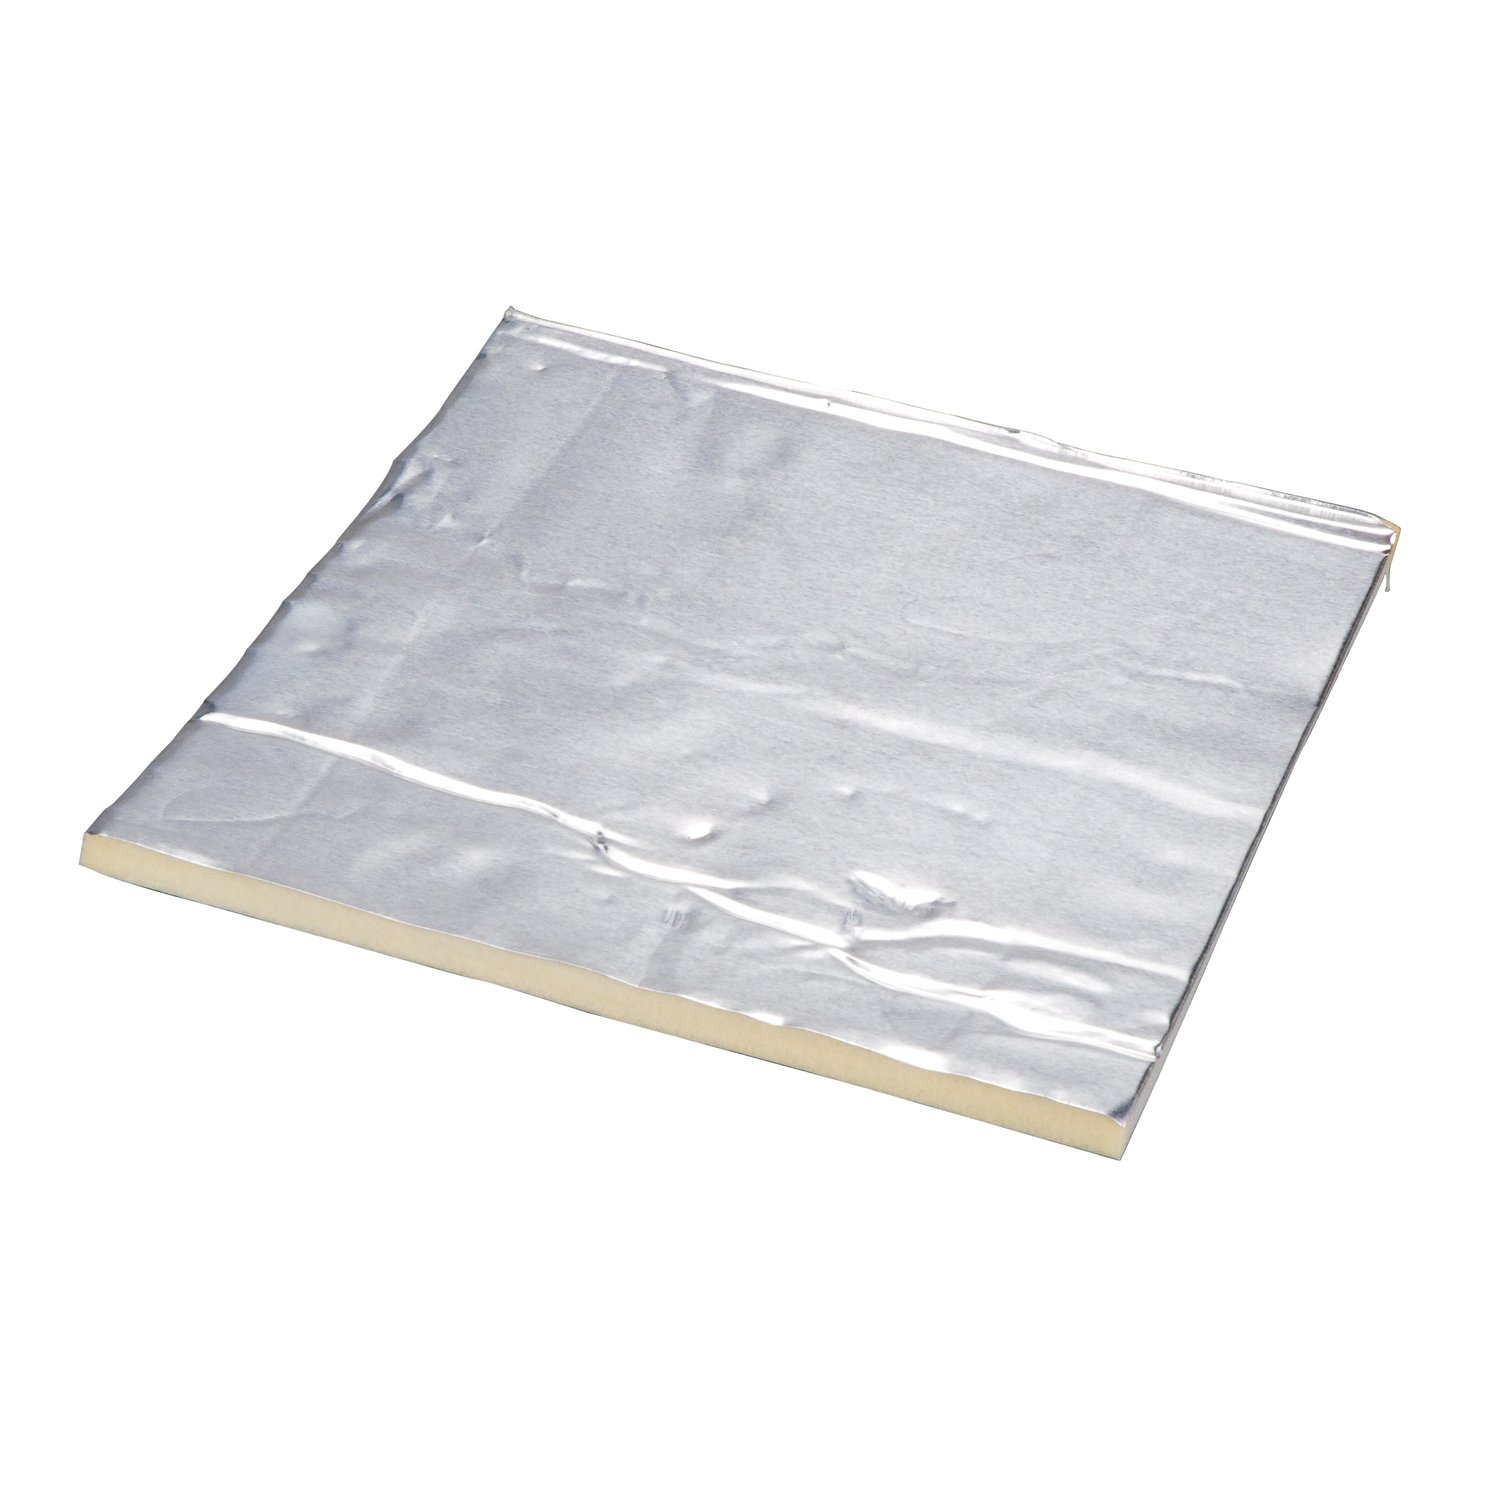 7000050112 - 3M Damping Aluminum Foam Sheets 4014, Silver, 18 in x 48 in, 250 mil, 1
pack per case (15 sheets per case)